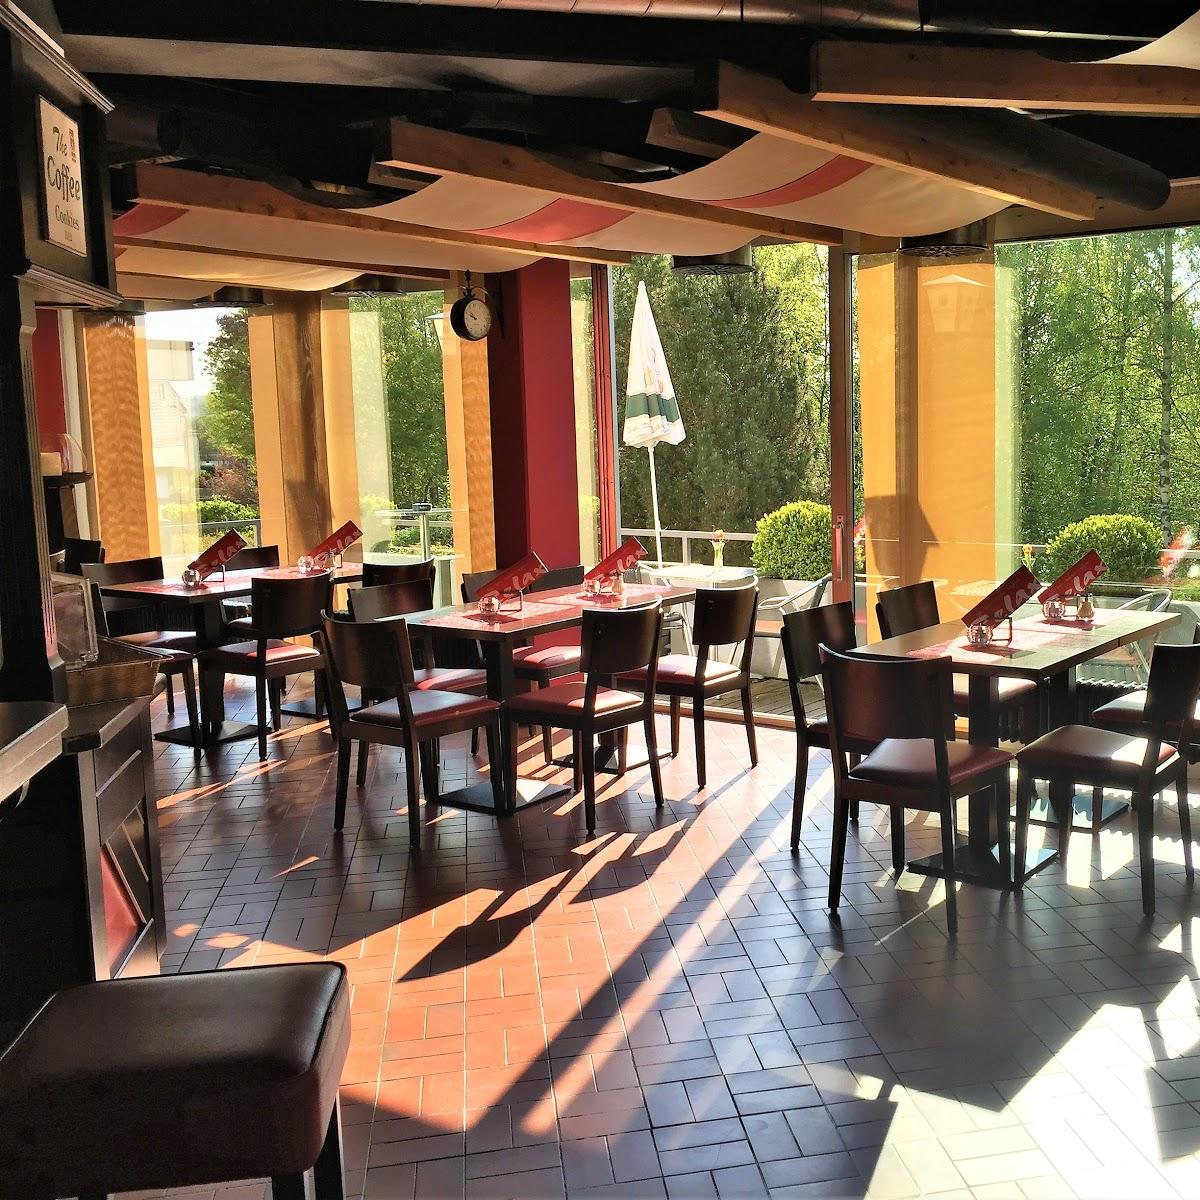 Restaurant "Cafe Bistro Relax - Sportzentrum" in Sulzbach-Saar